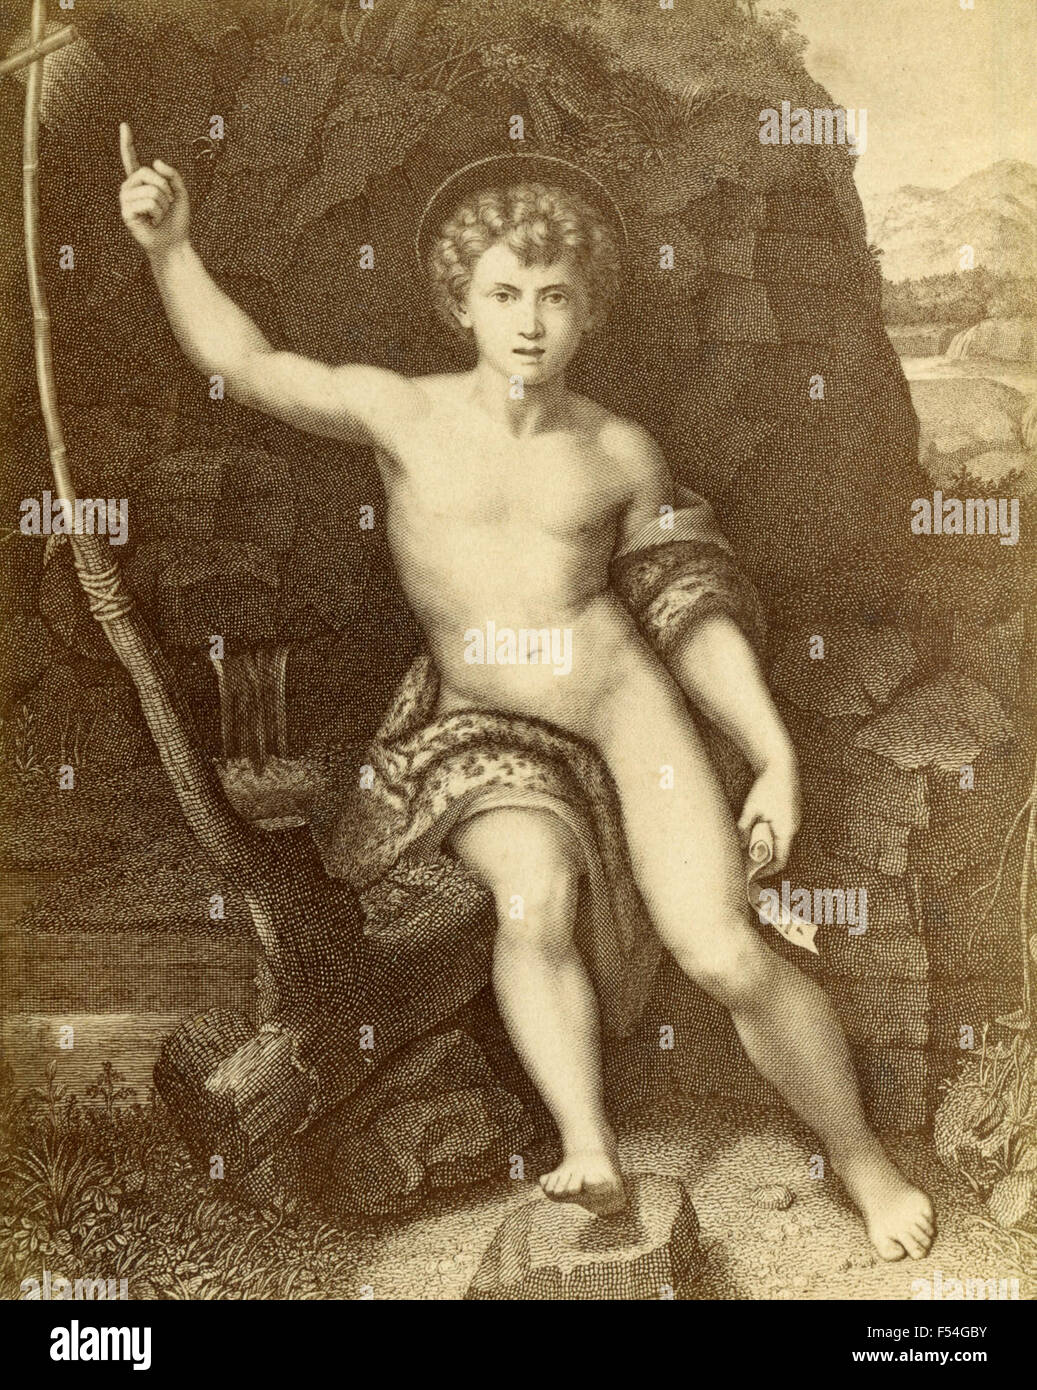 Saint Jean Baptiste, la peinture de Raphaël, Italie Banque D'Images